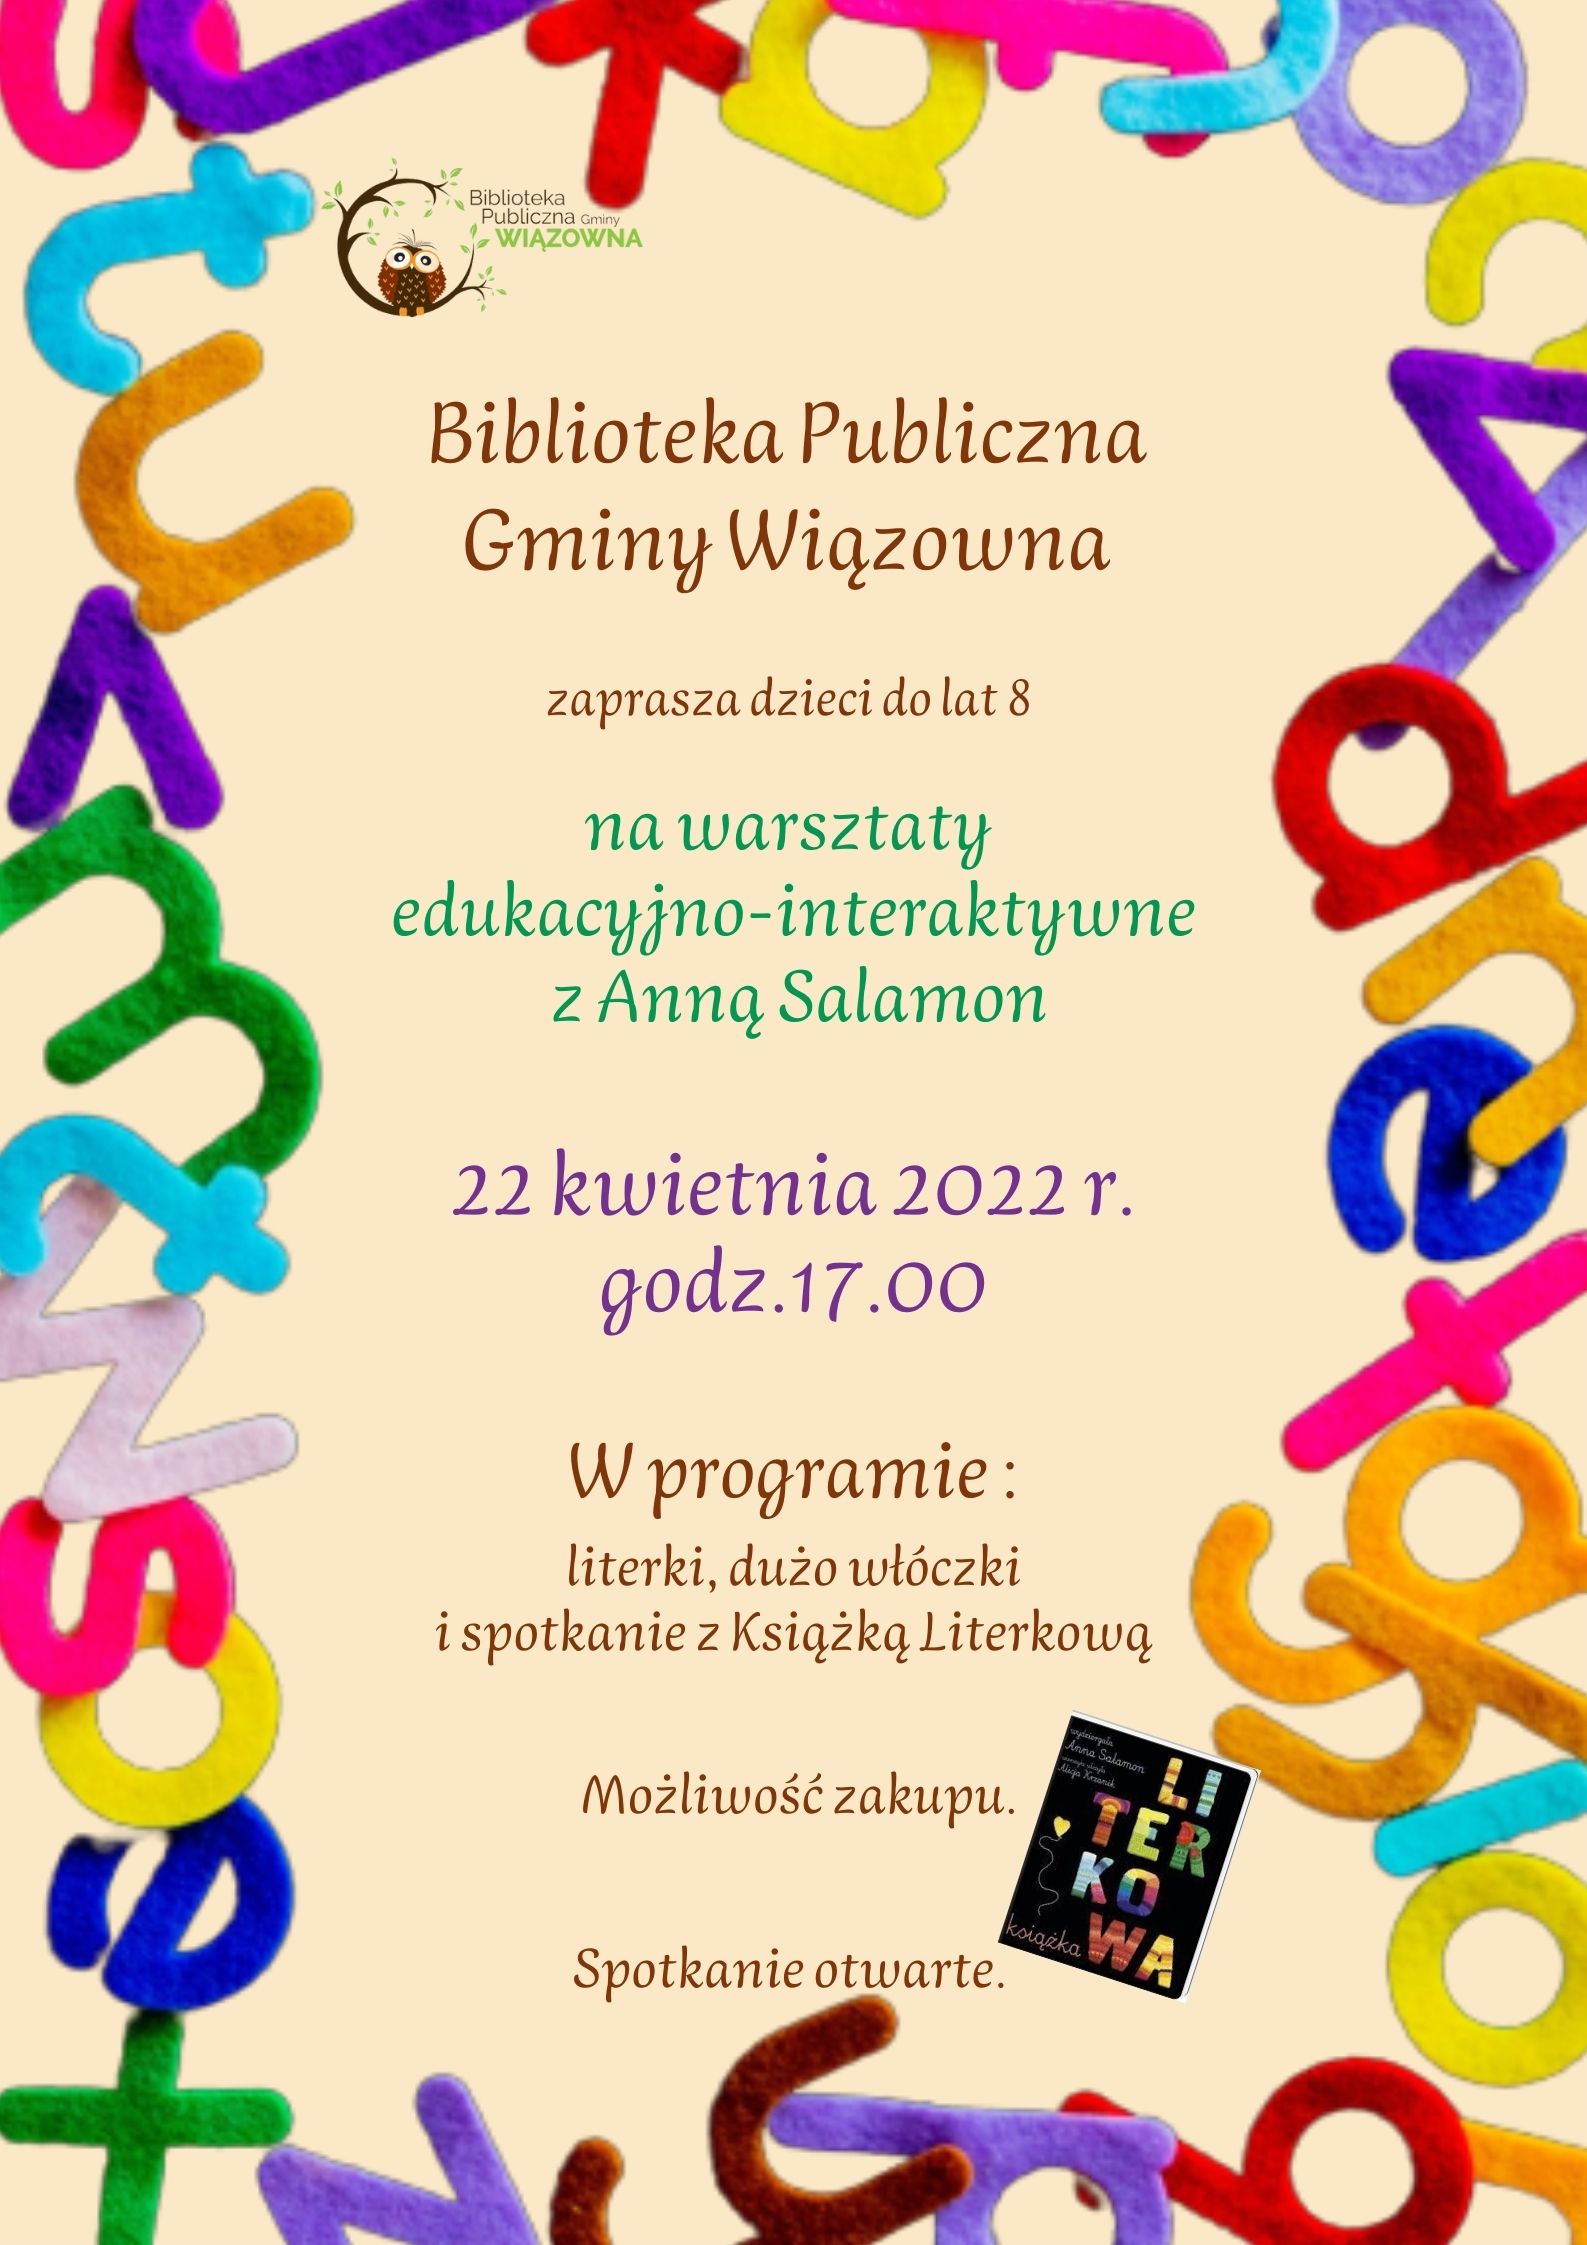 Warsztaty Bibliotekia w Wiązownie 22 kwietnia o godz. 17.00 w siedzibie bliblioteki przy ul. Kościelnej